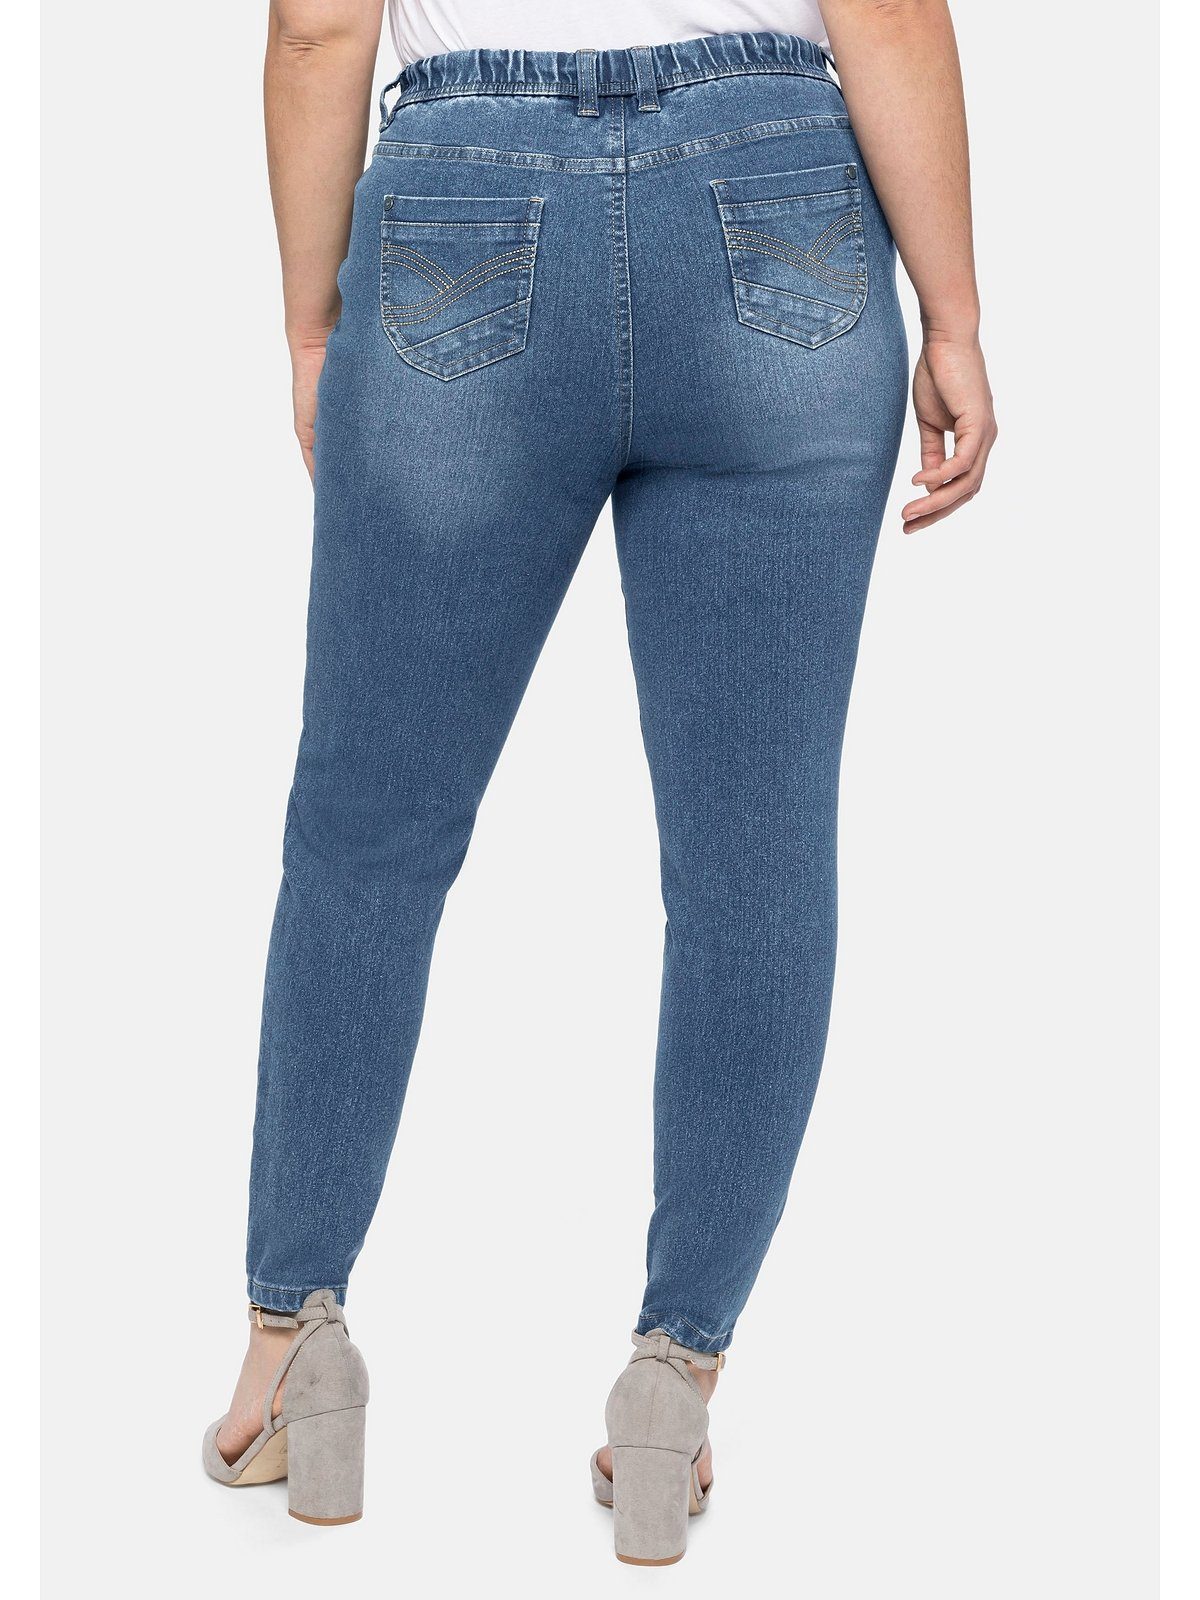 Sheego Stretch-Jeans Große Größen mit Gummibund und Gürtelschlaufen | Stretchjeans